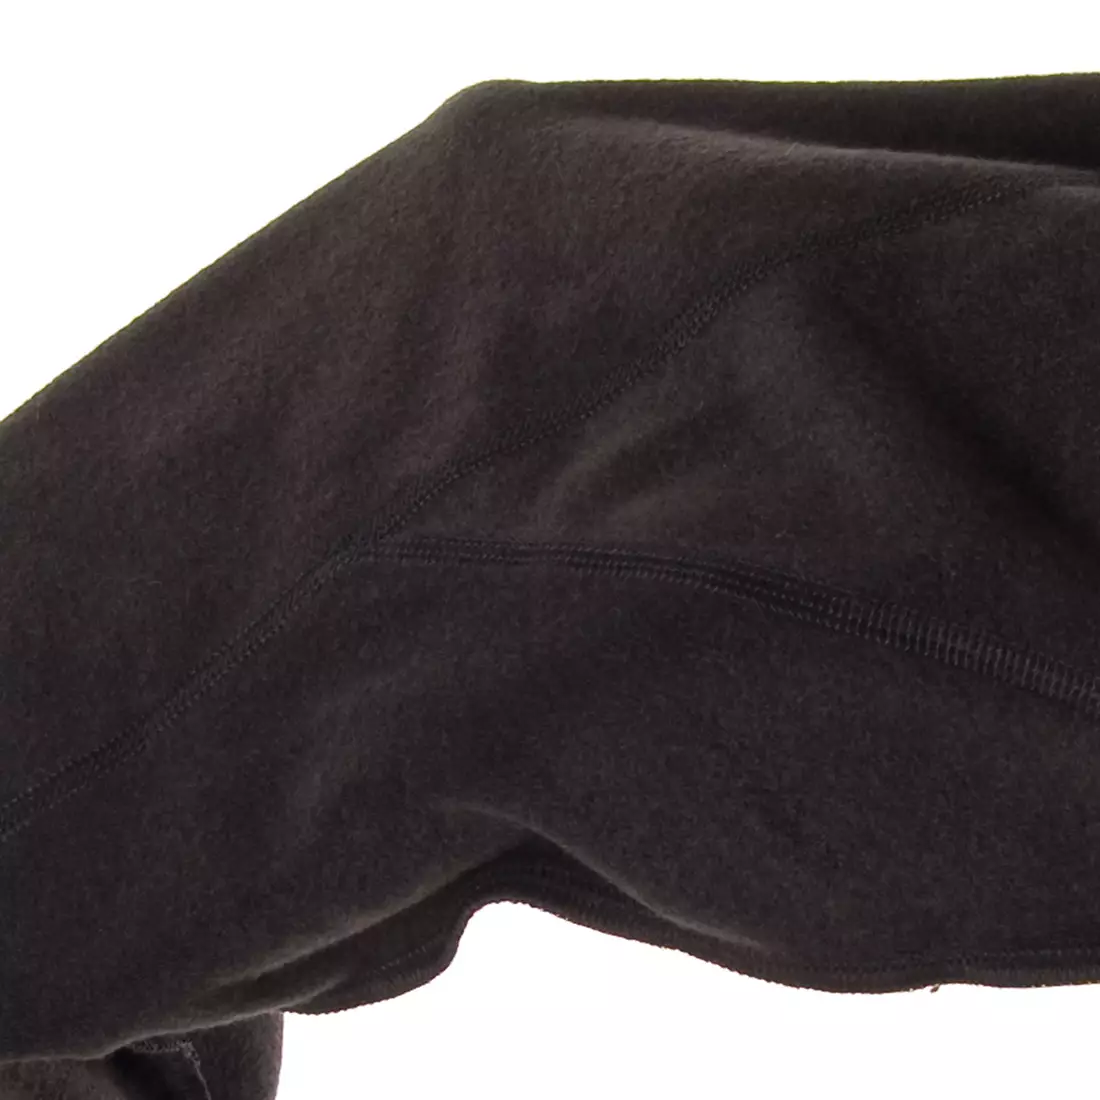 KAYMAQ ELWIN-W201 dámské zateplené cyklistické kalhoty bez šle, ThermoRoubaix 3.0, černá